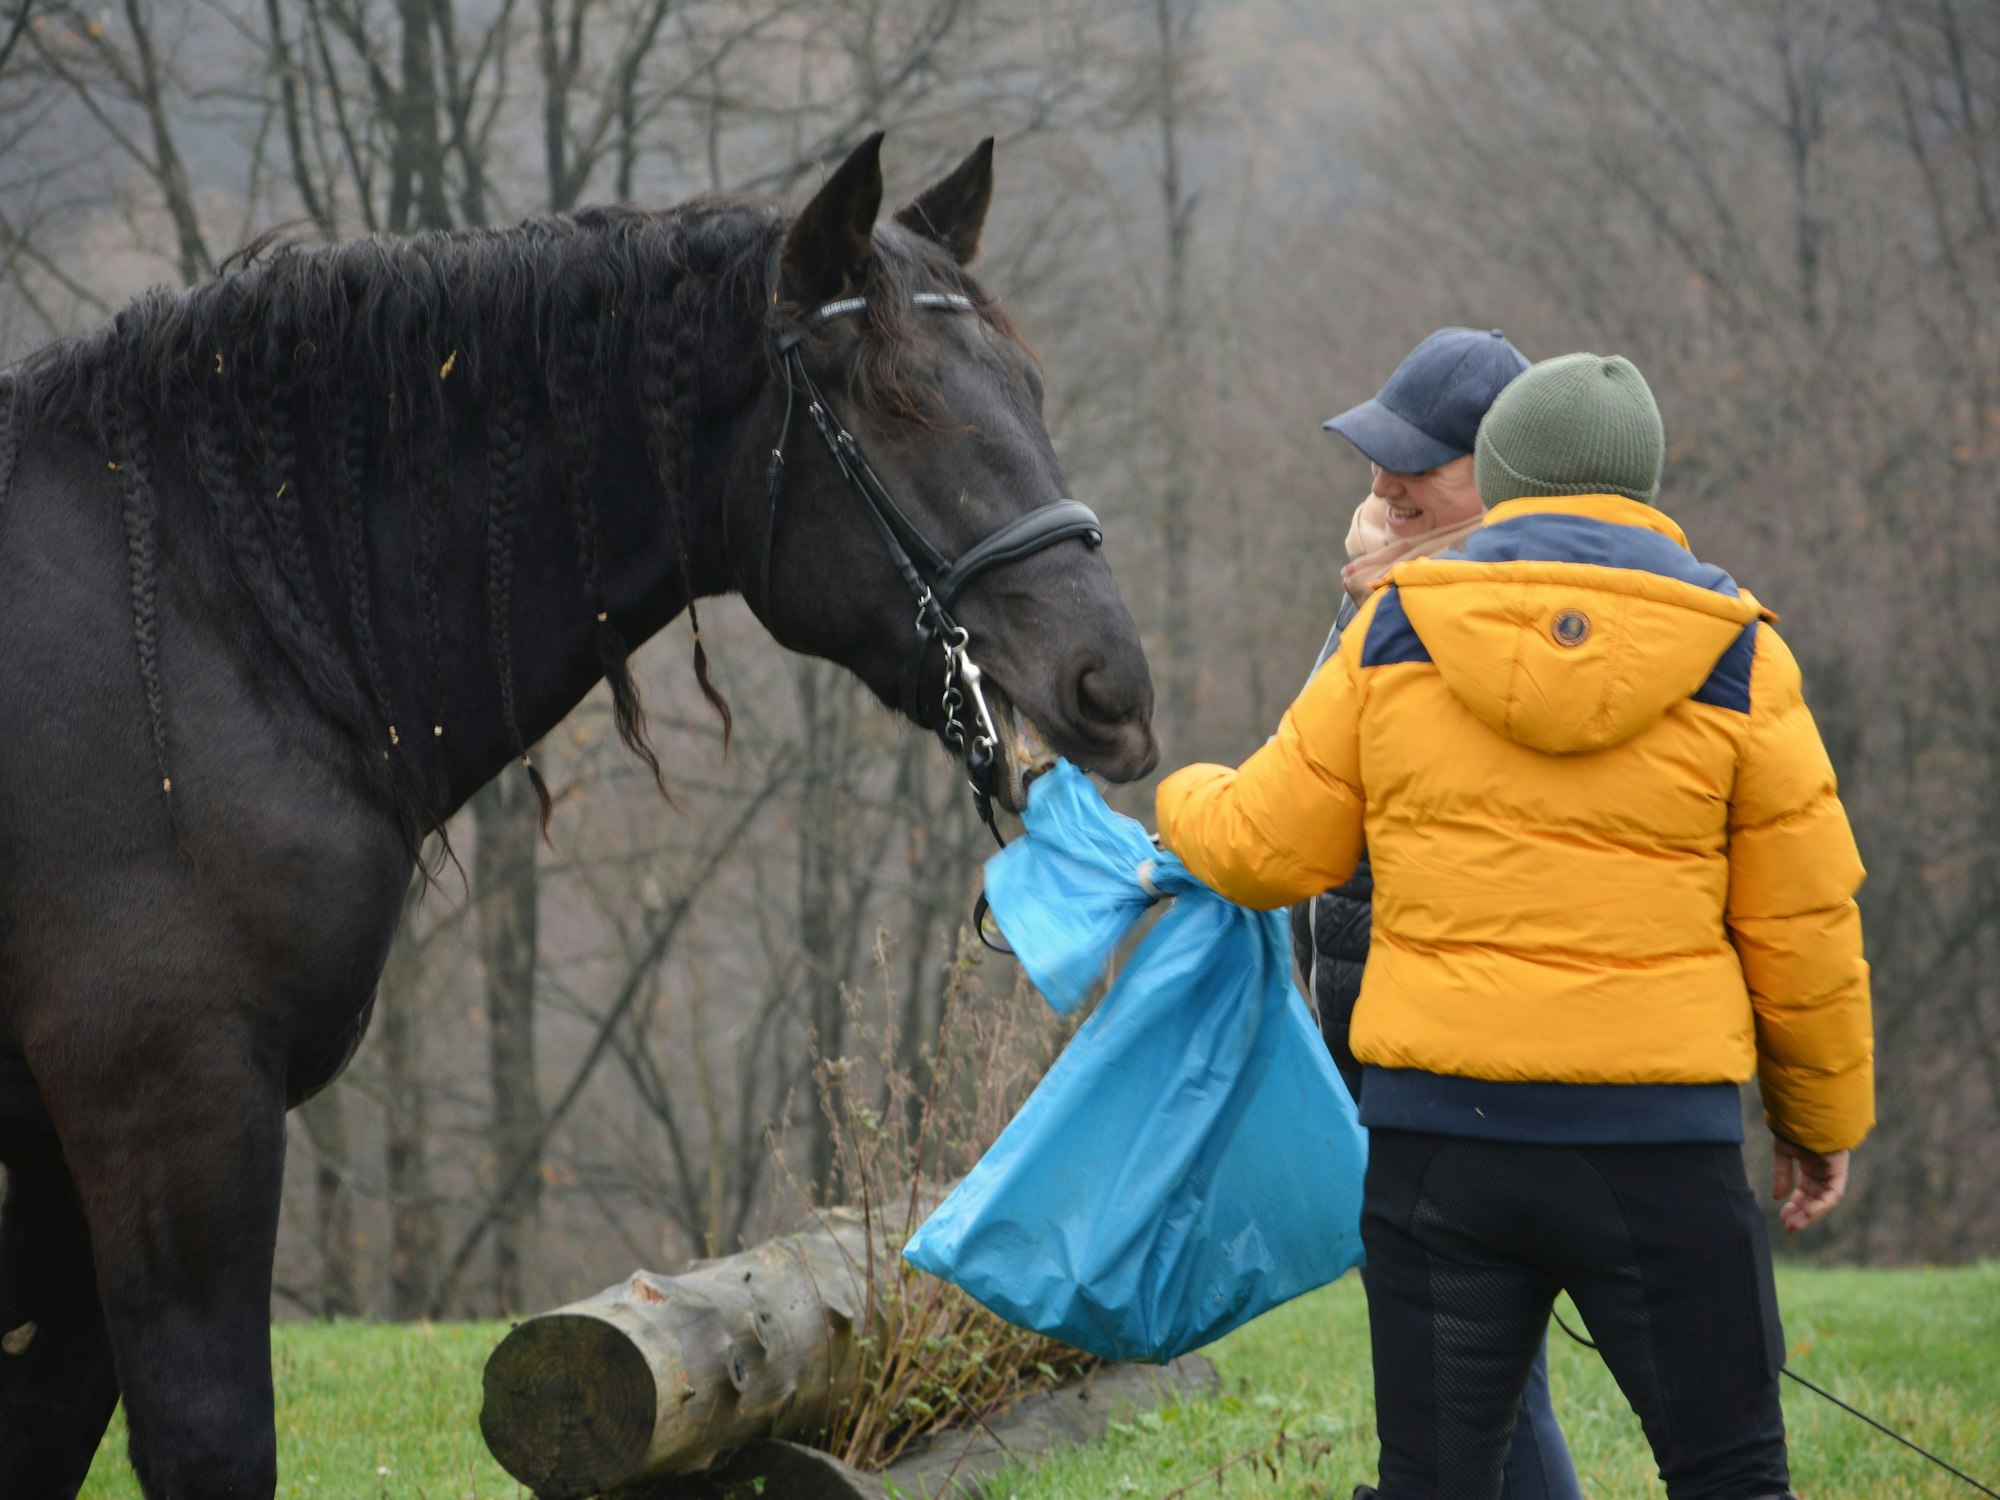 Ein schwarzes Pferd schaut sich einen blauen Sack an, der von einer Person gehalten wird.